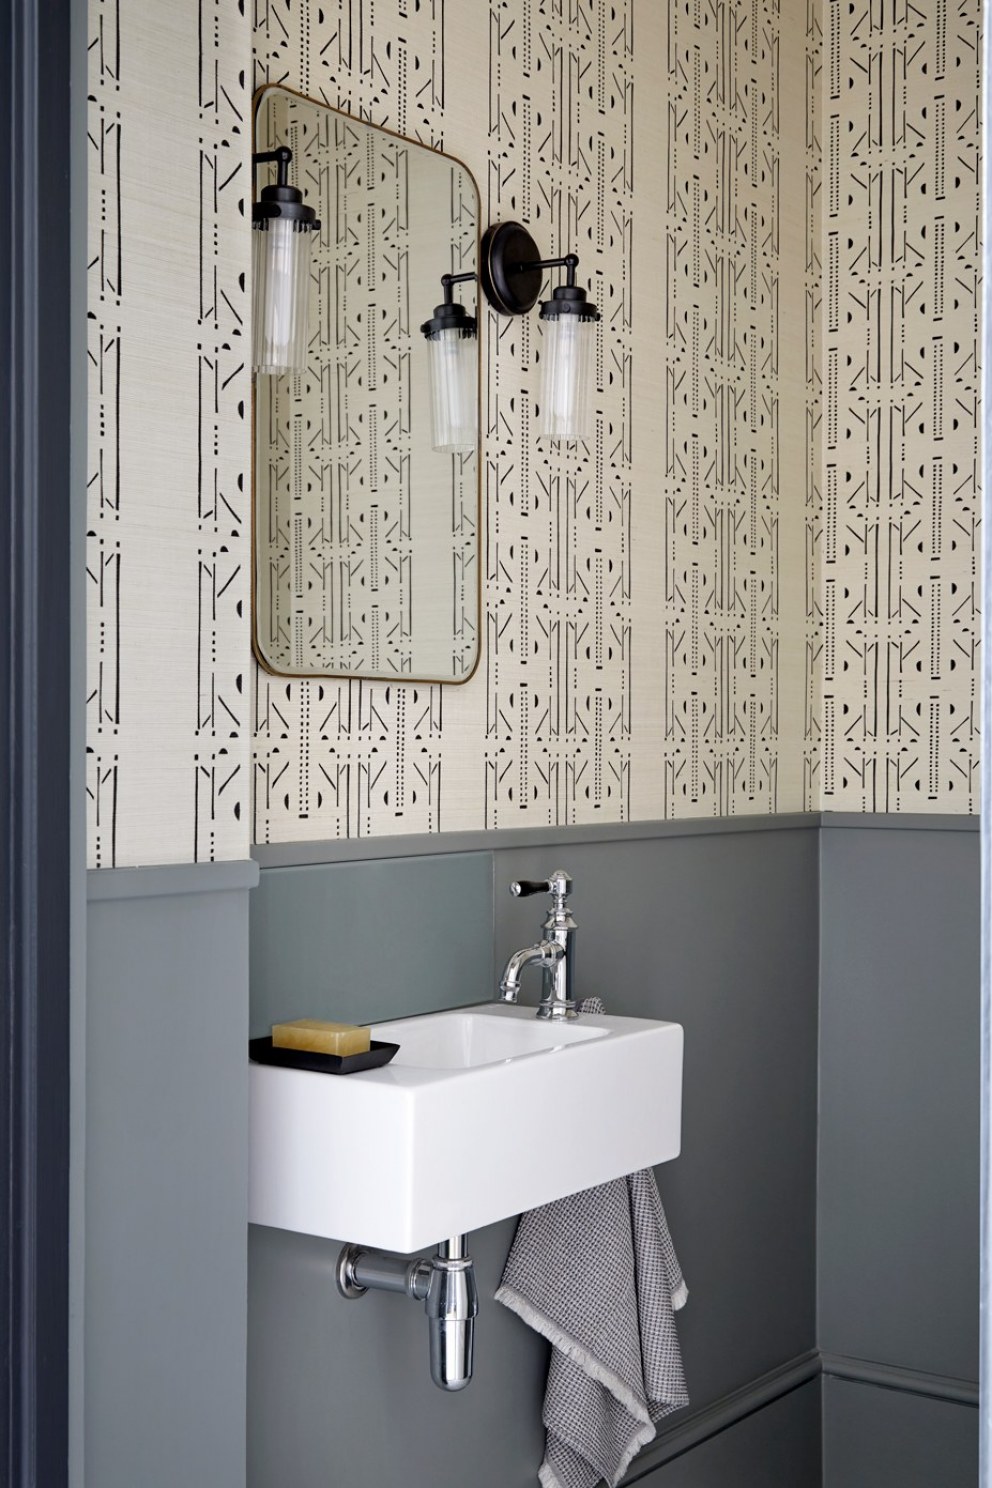 Between the Commons, SW11 | Cloakroom textured wallpaper | Interior Designers